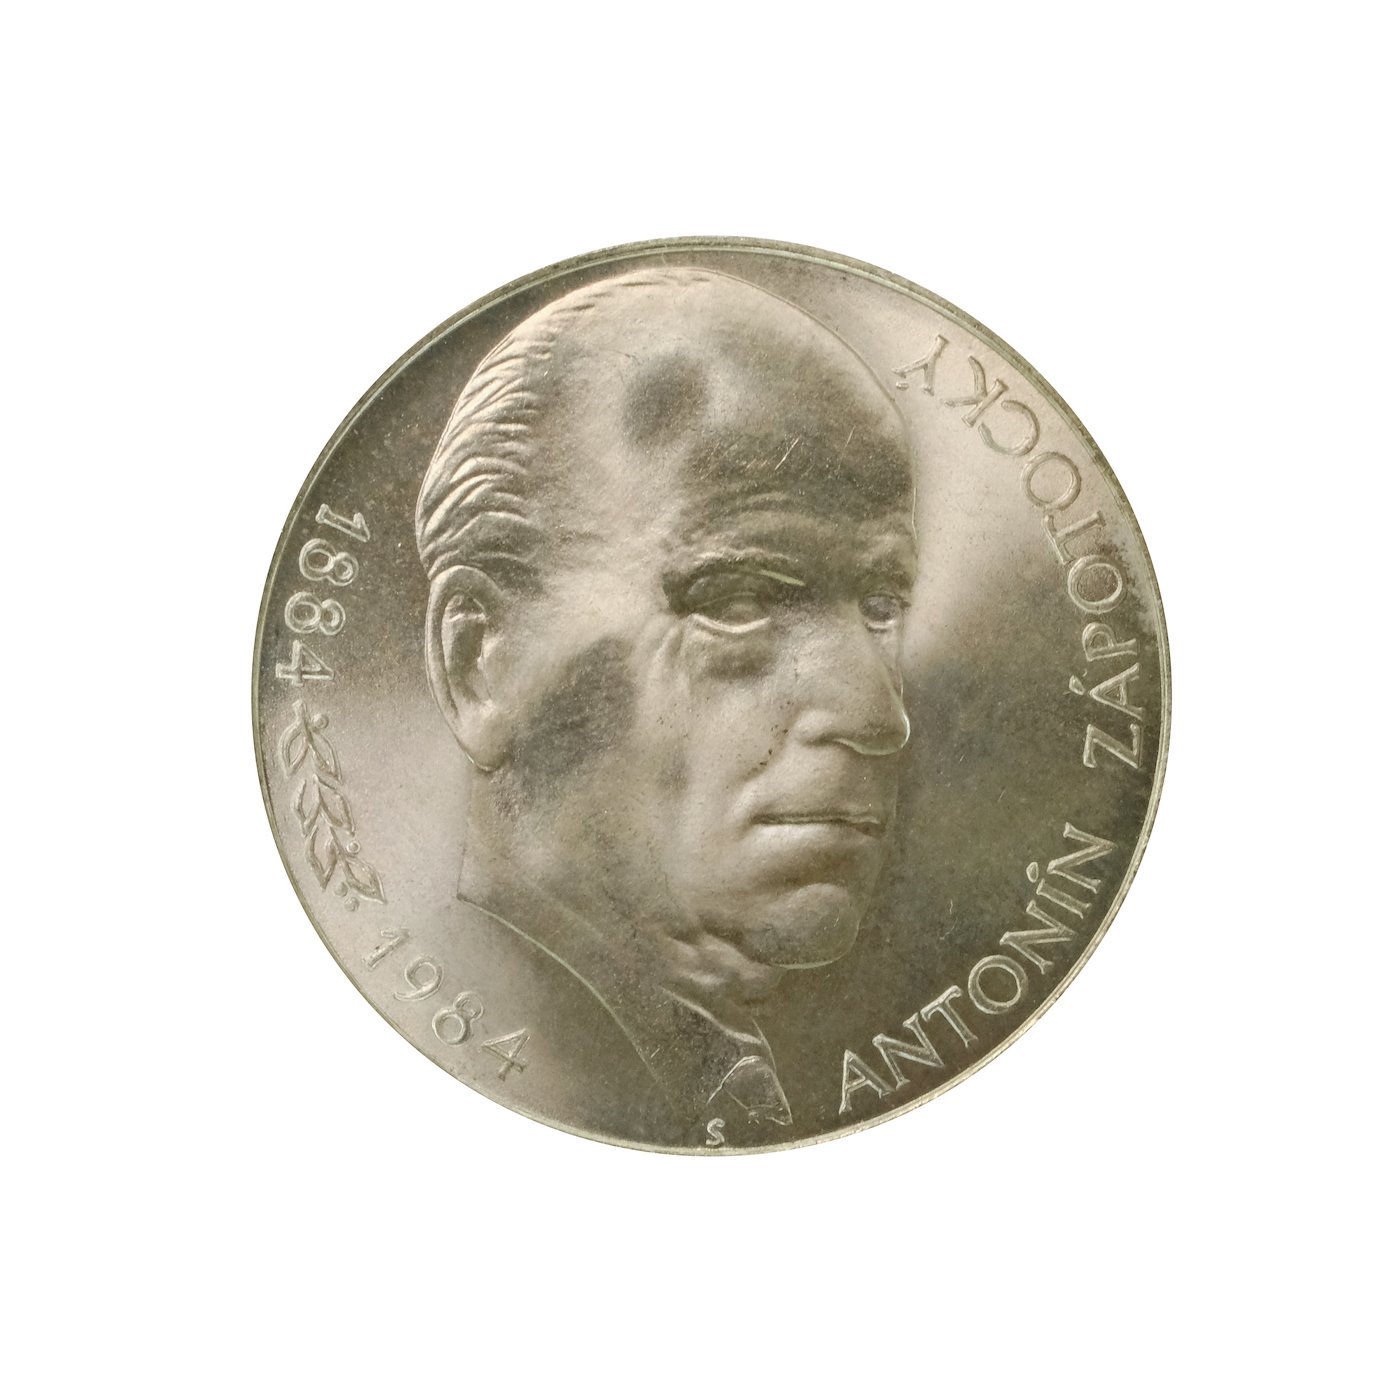 .. - Pamětní stříbrná mince vydaná ke 100 výročí narození Antonína Zápotockého 1984 100 Kčs, stříbro 500/1000, hrubá hmotnost 9 g